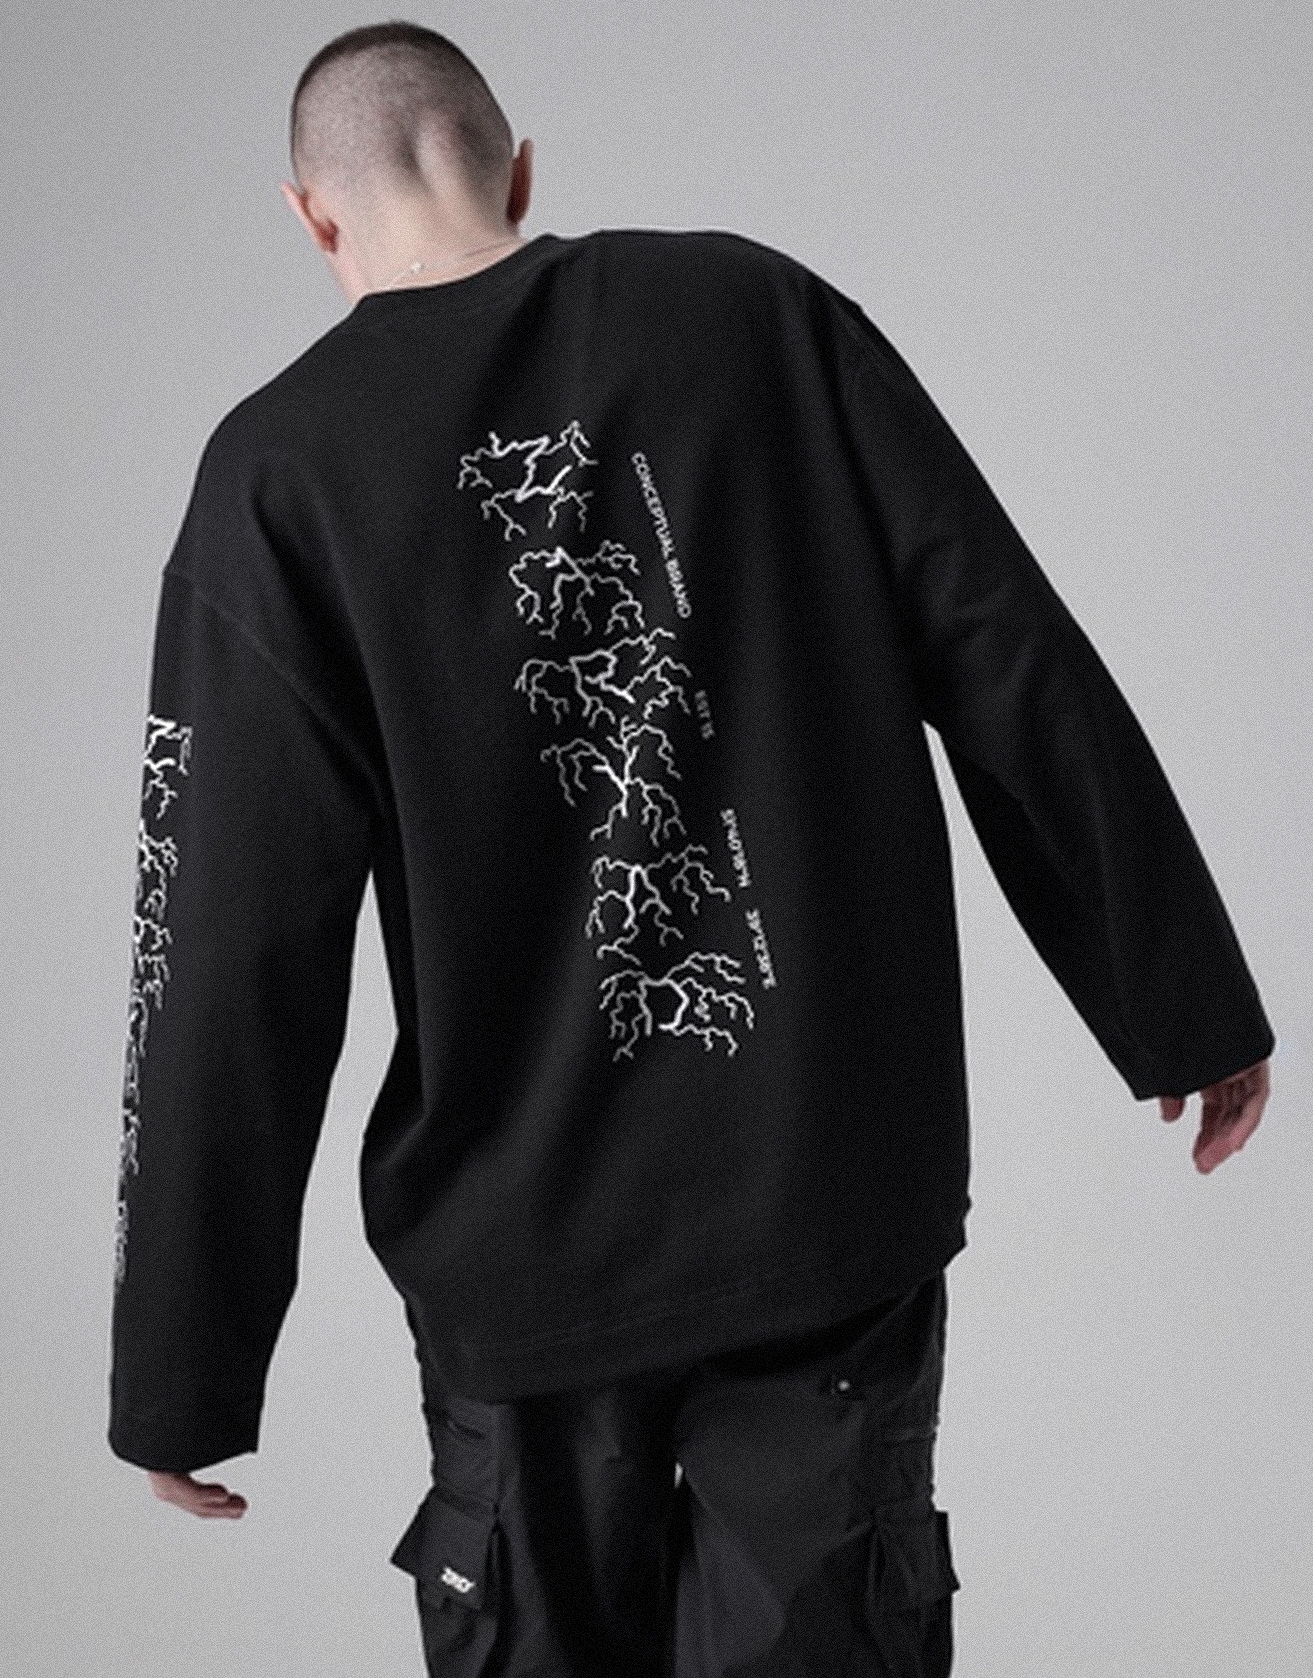 Thorn Coil Dark Pullover Crew Neck Sweatshirt / TECHWEAR CLUB / Techwear